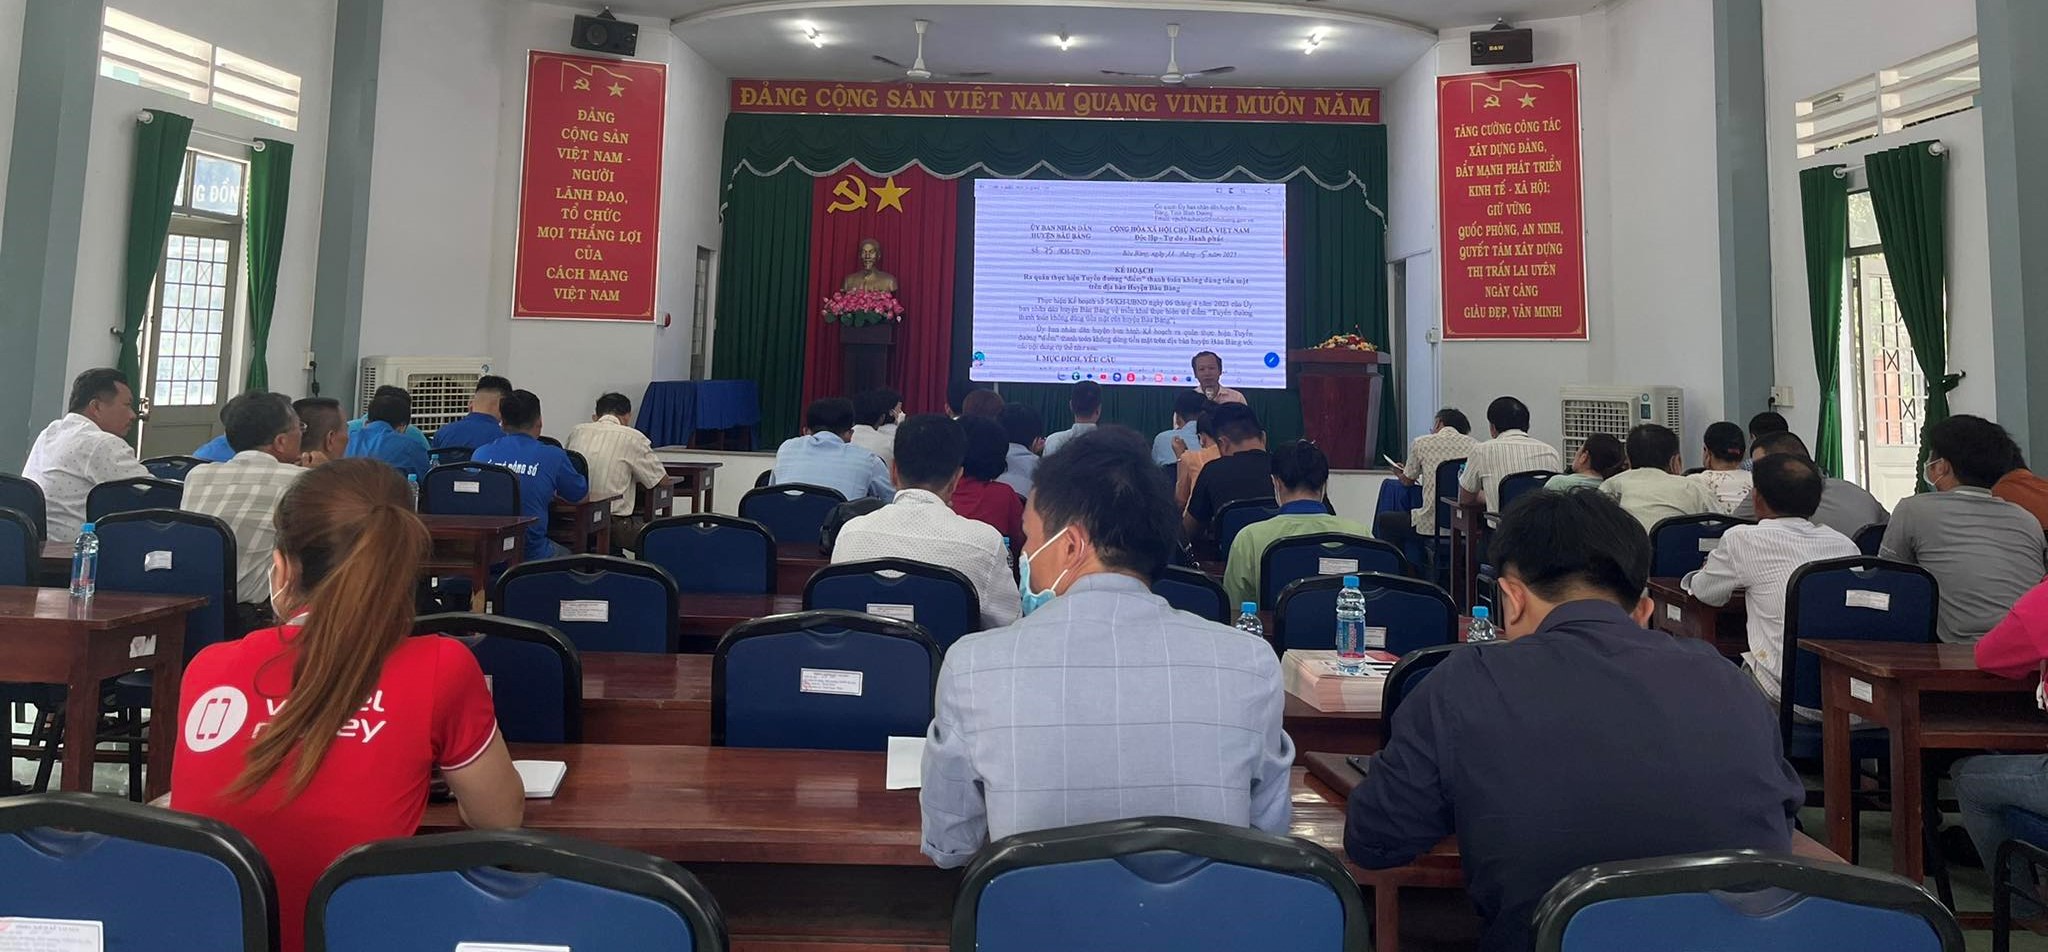 Thị trấn Lai Uyên tổ chức tập huấn cài đặt ứng dụng thanh toán không dùng tiền mặt